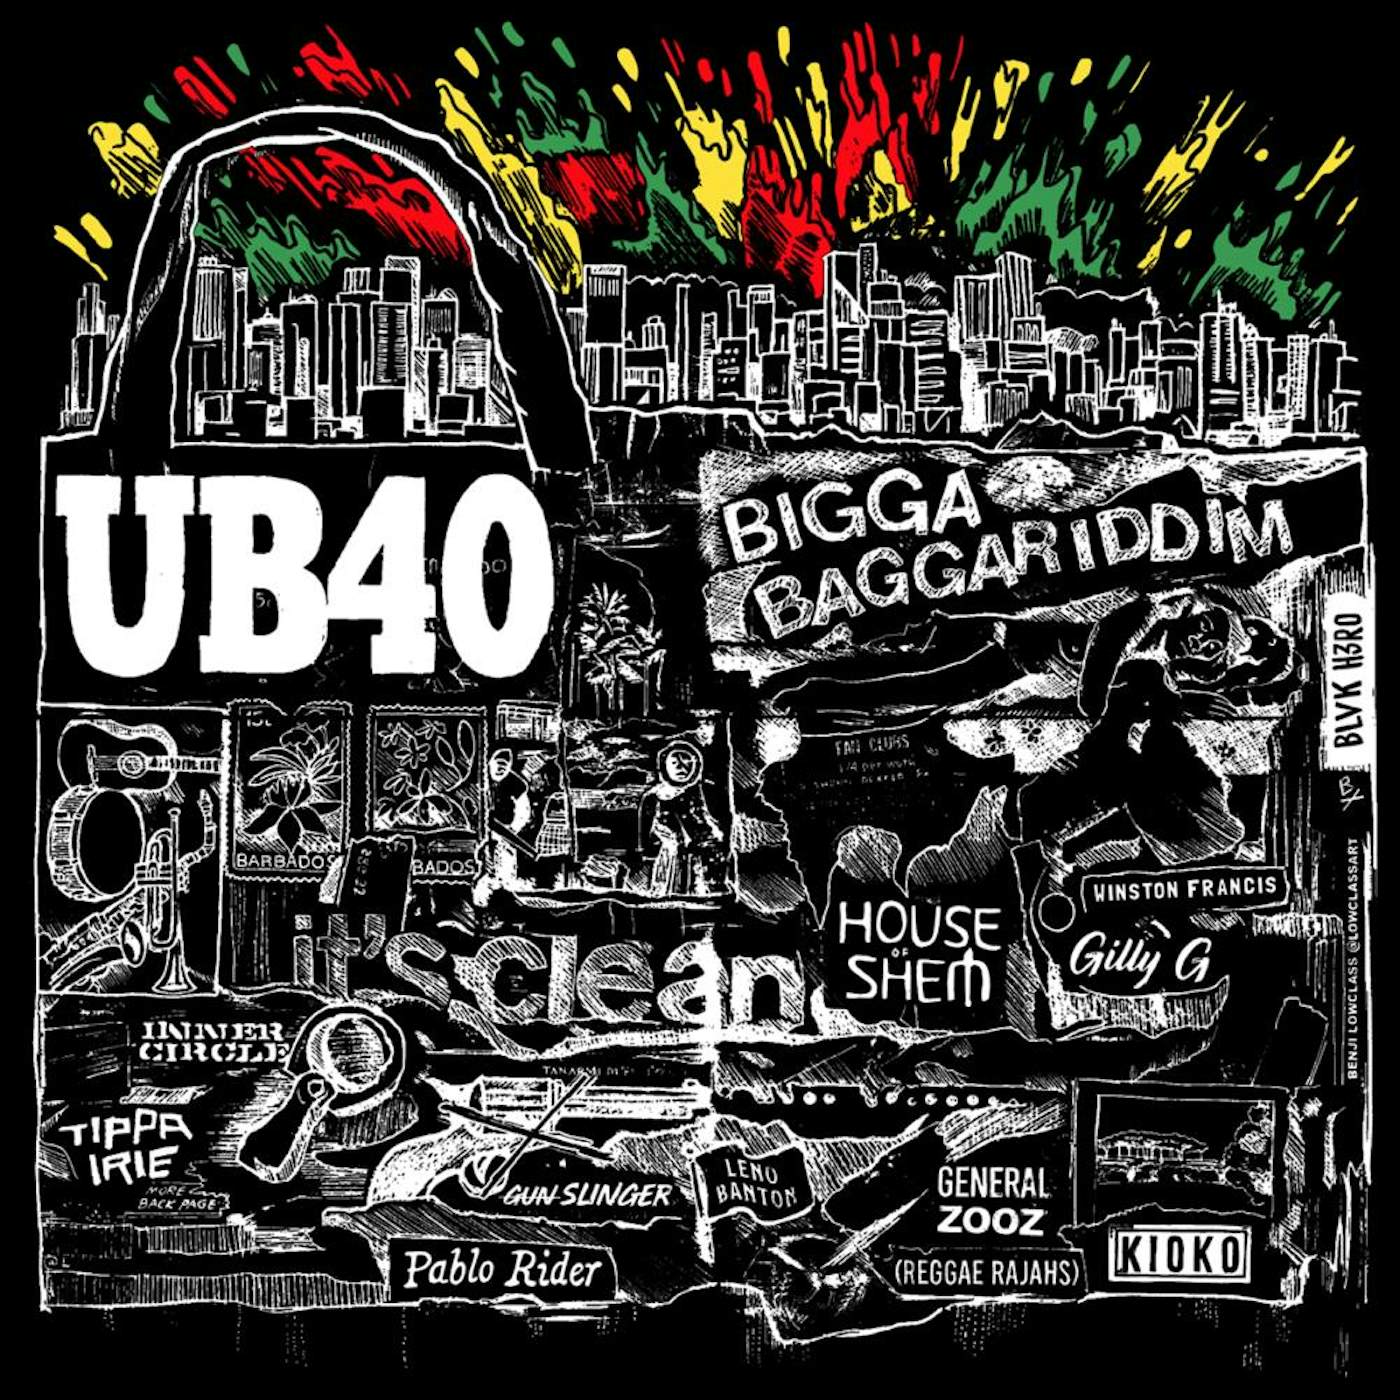 UB40 BIGGA BAGGARIDDIM CD